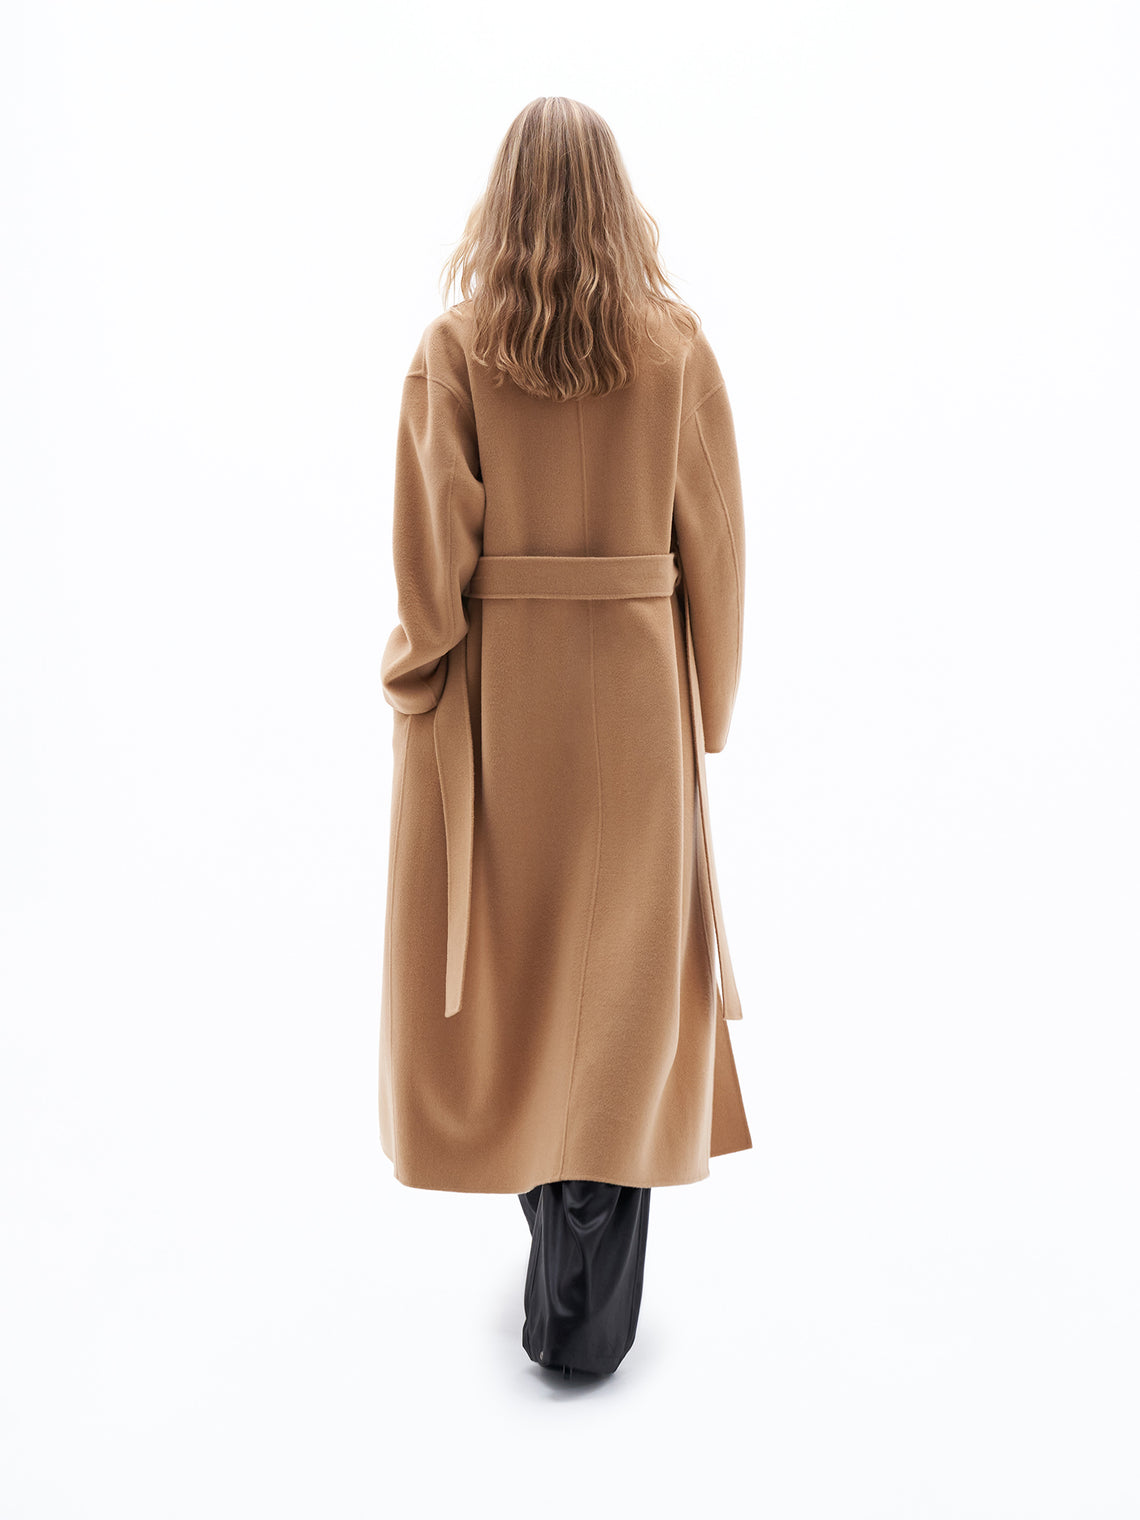 Alexa wool coat by Filippa K in light camel